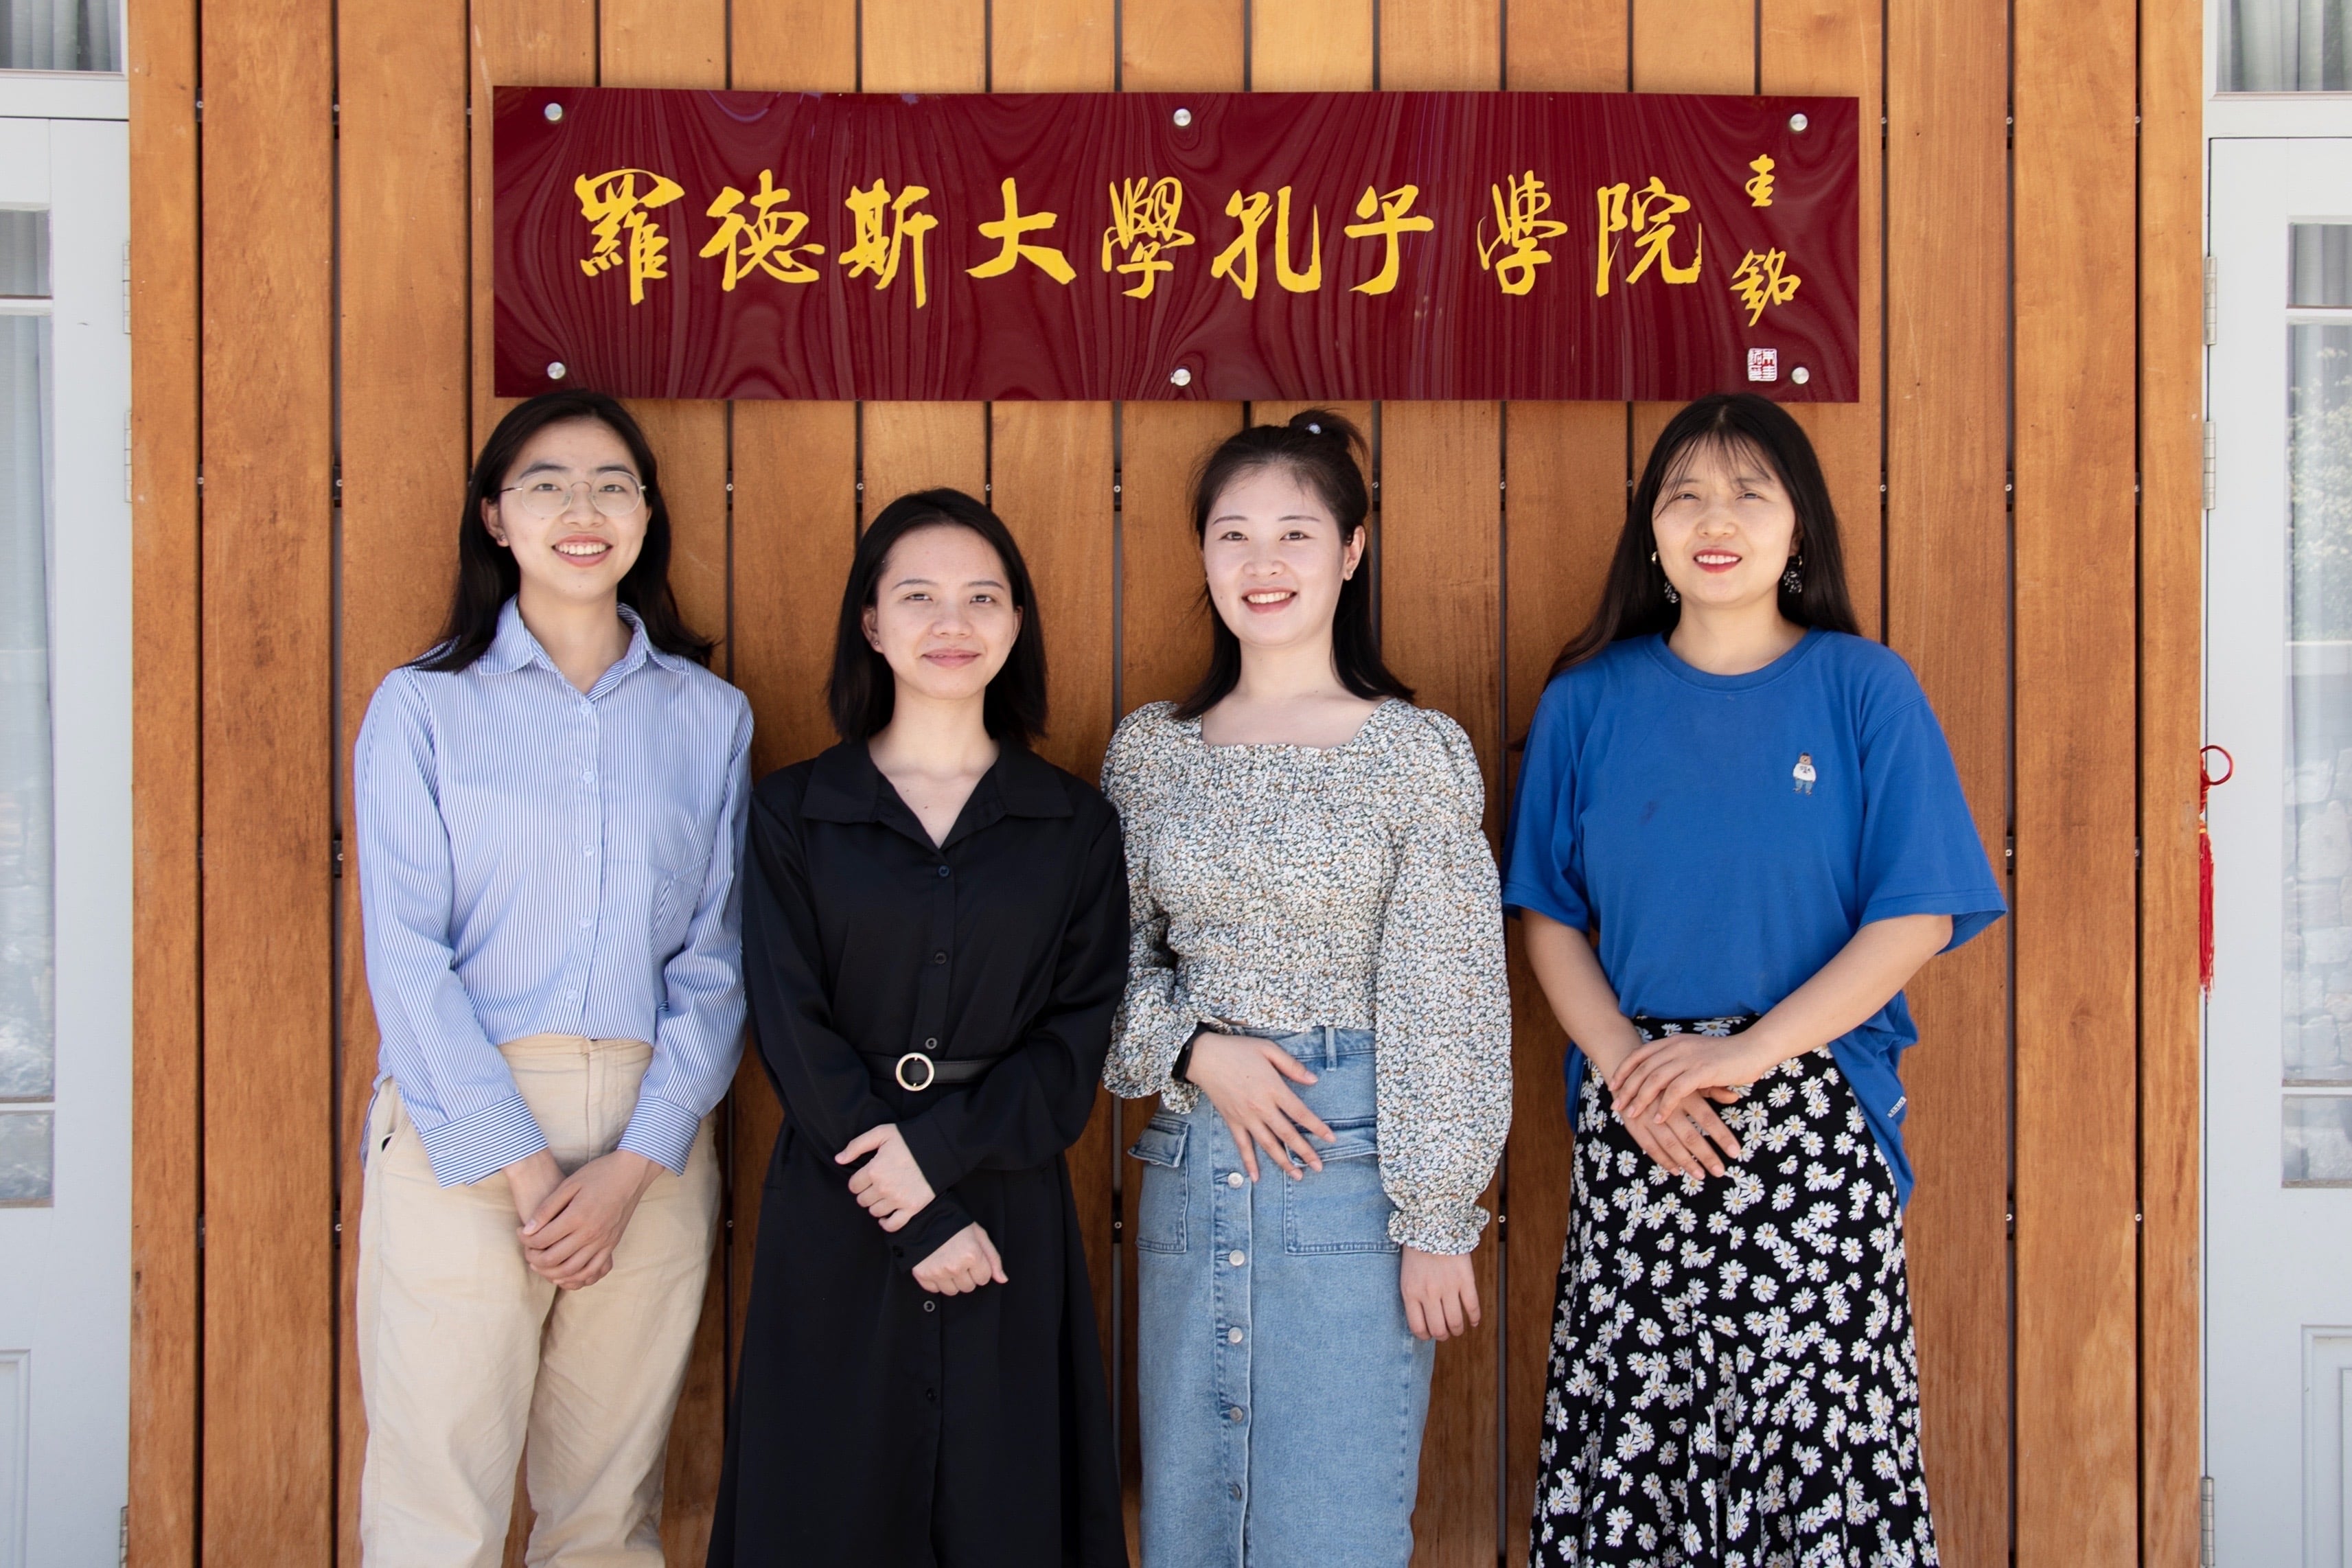 From left to right: Ms Zou Hongmin, Ms Wan Ru, Ms Zou Hanyang, Ms Zhu Jingjing at Rhodes University